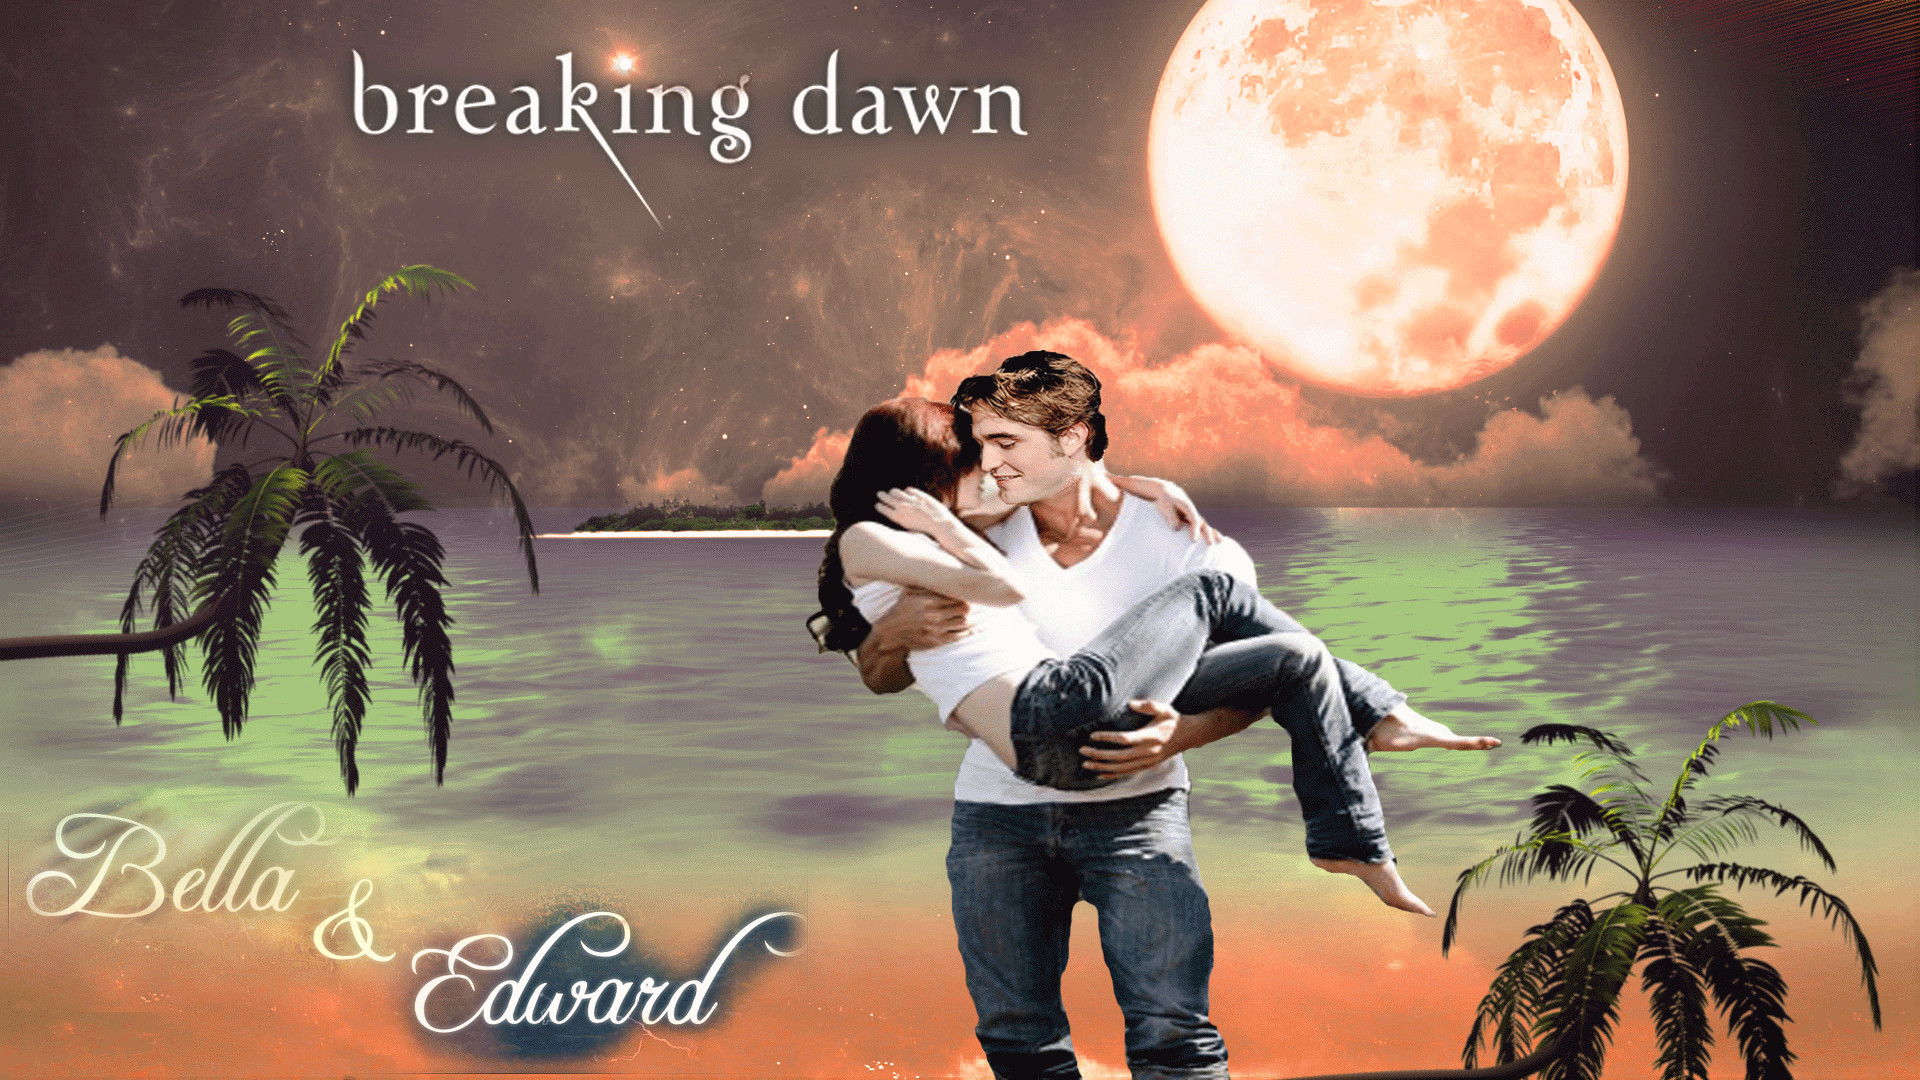 1920x1080 breaking dawn - Twilight Couples Wallpaper (9992896) - Fanpop